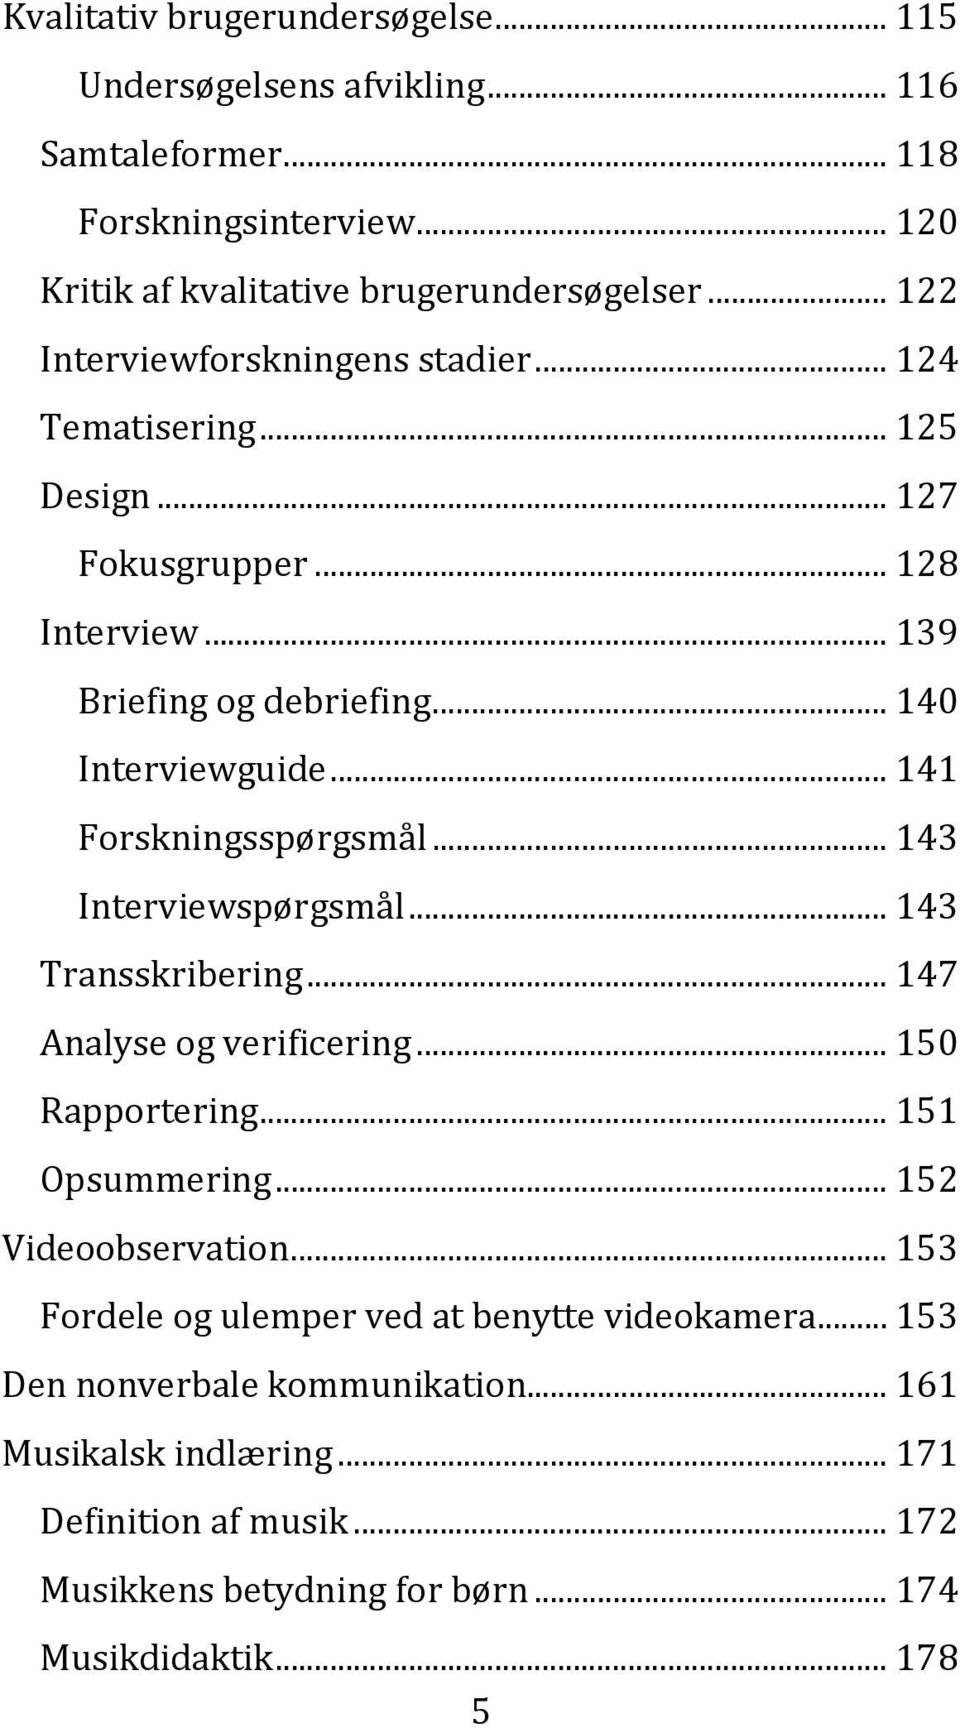 .. 141 Forskningsspørgsmål... 143 Interviewspørgsmål... 143 Transskribering... 147 Analyse og verificering... 150 Rapportering... 151 Opsummering... 152 Videoobservation.